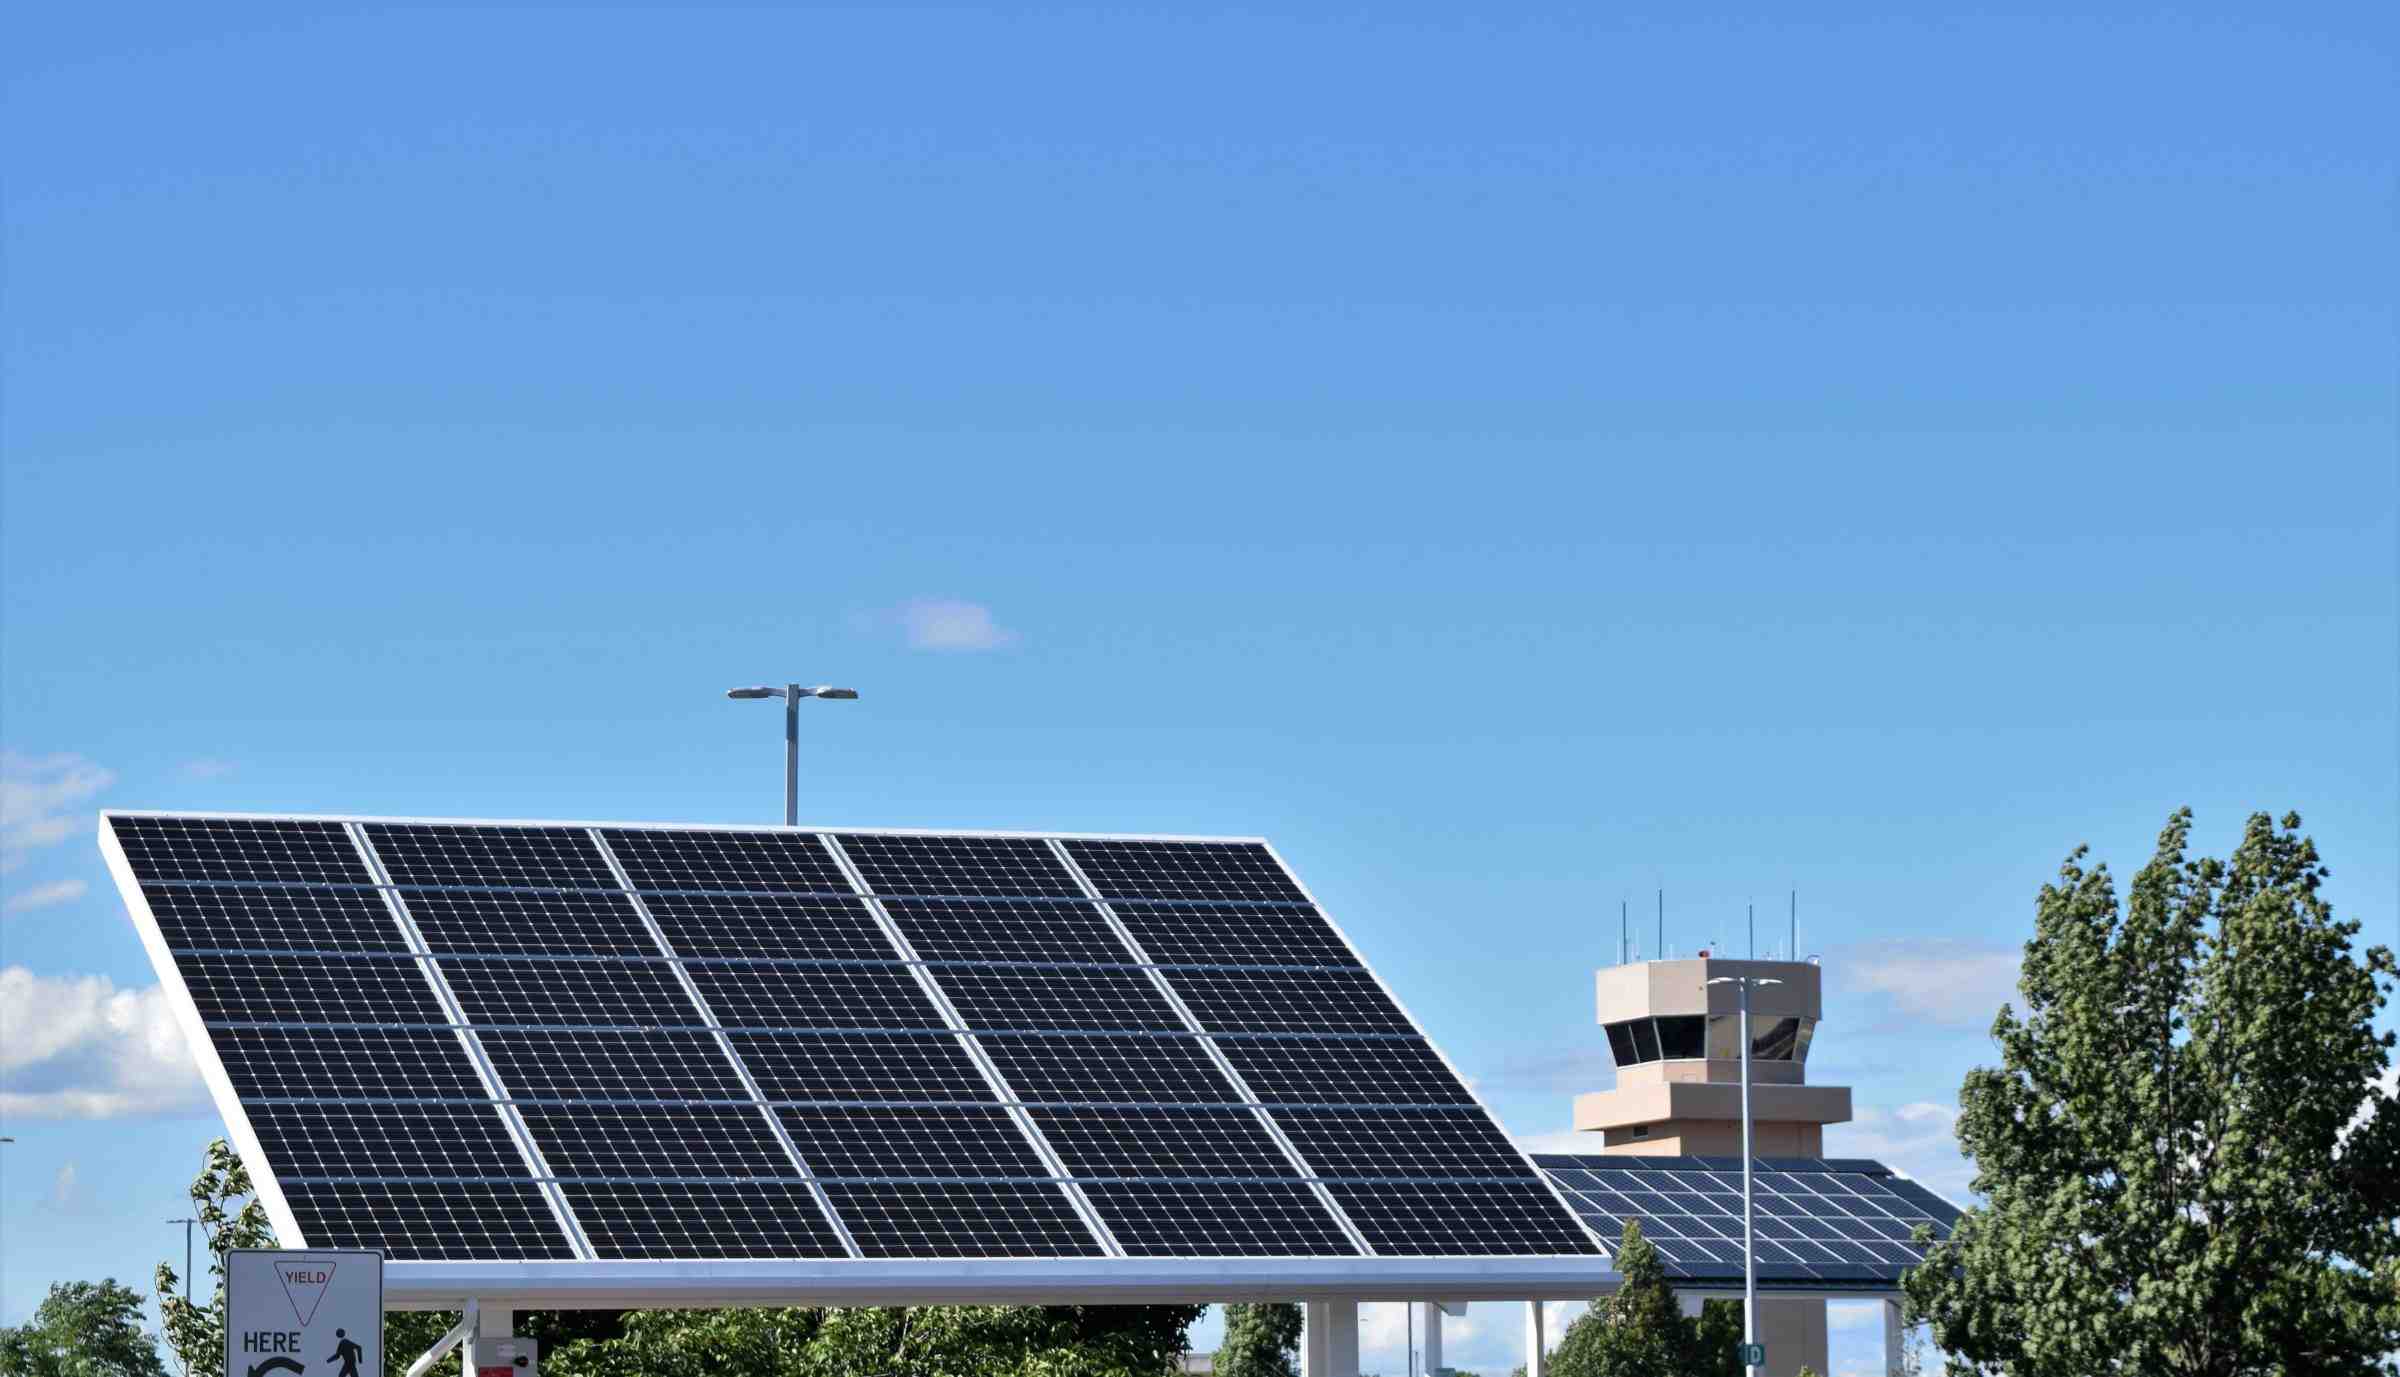 How long do solar panels last for?